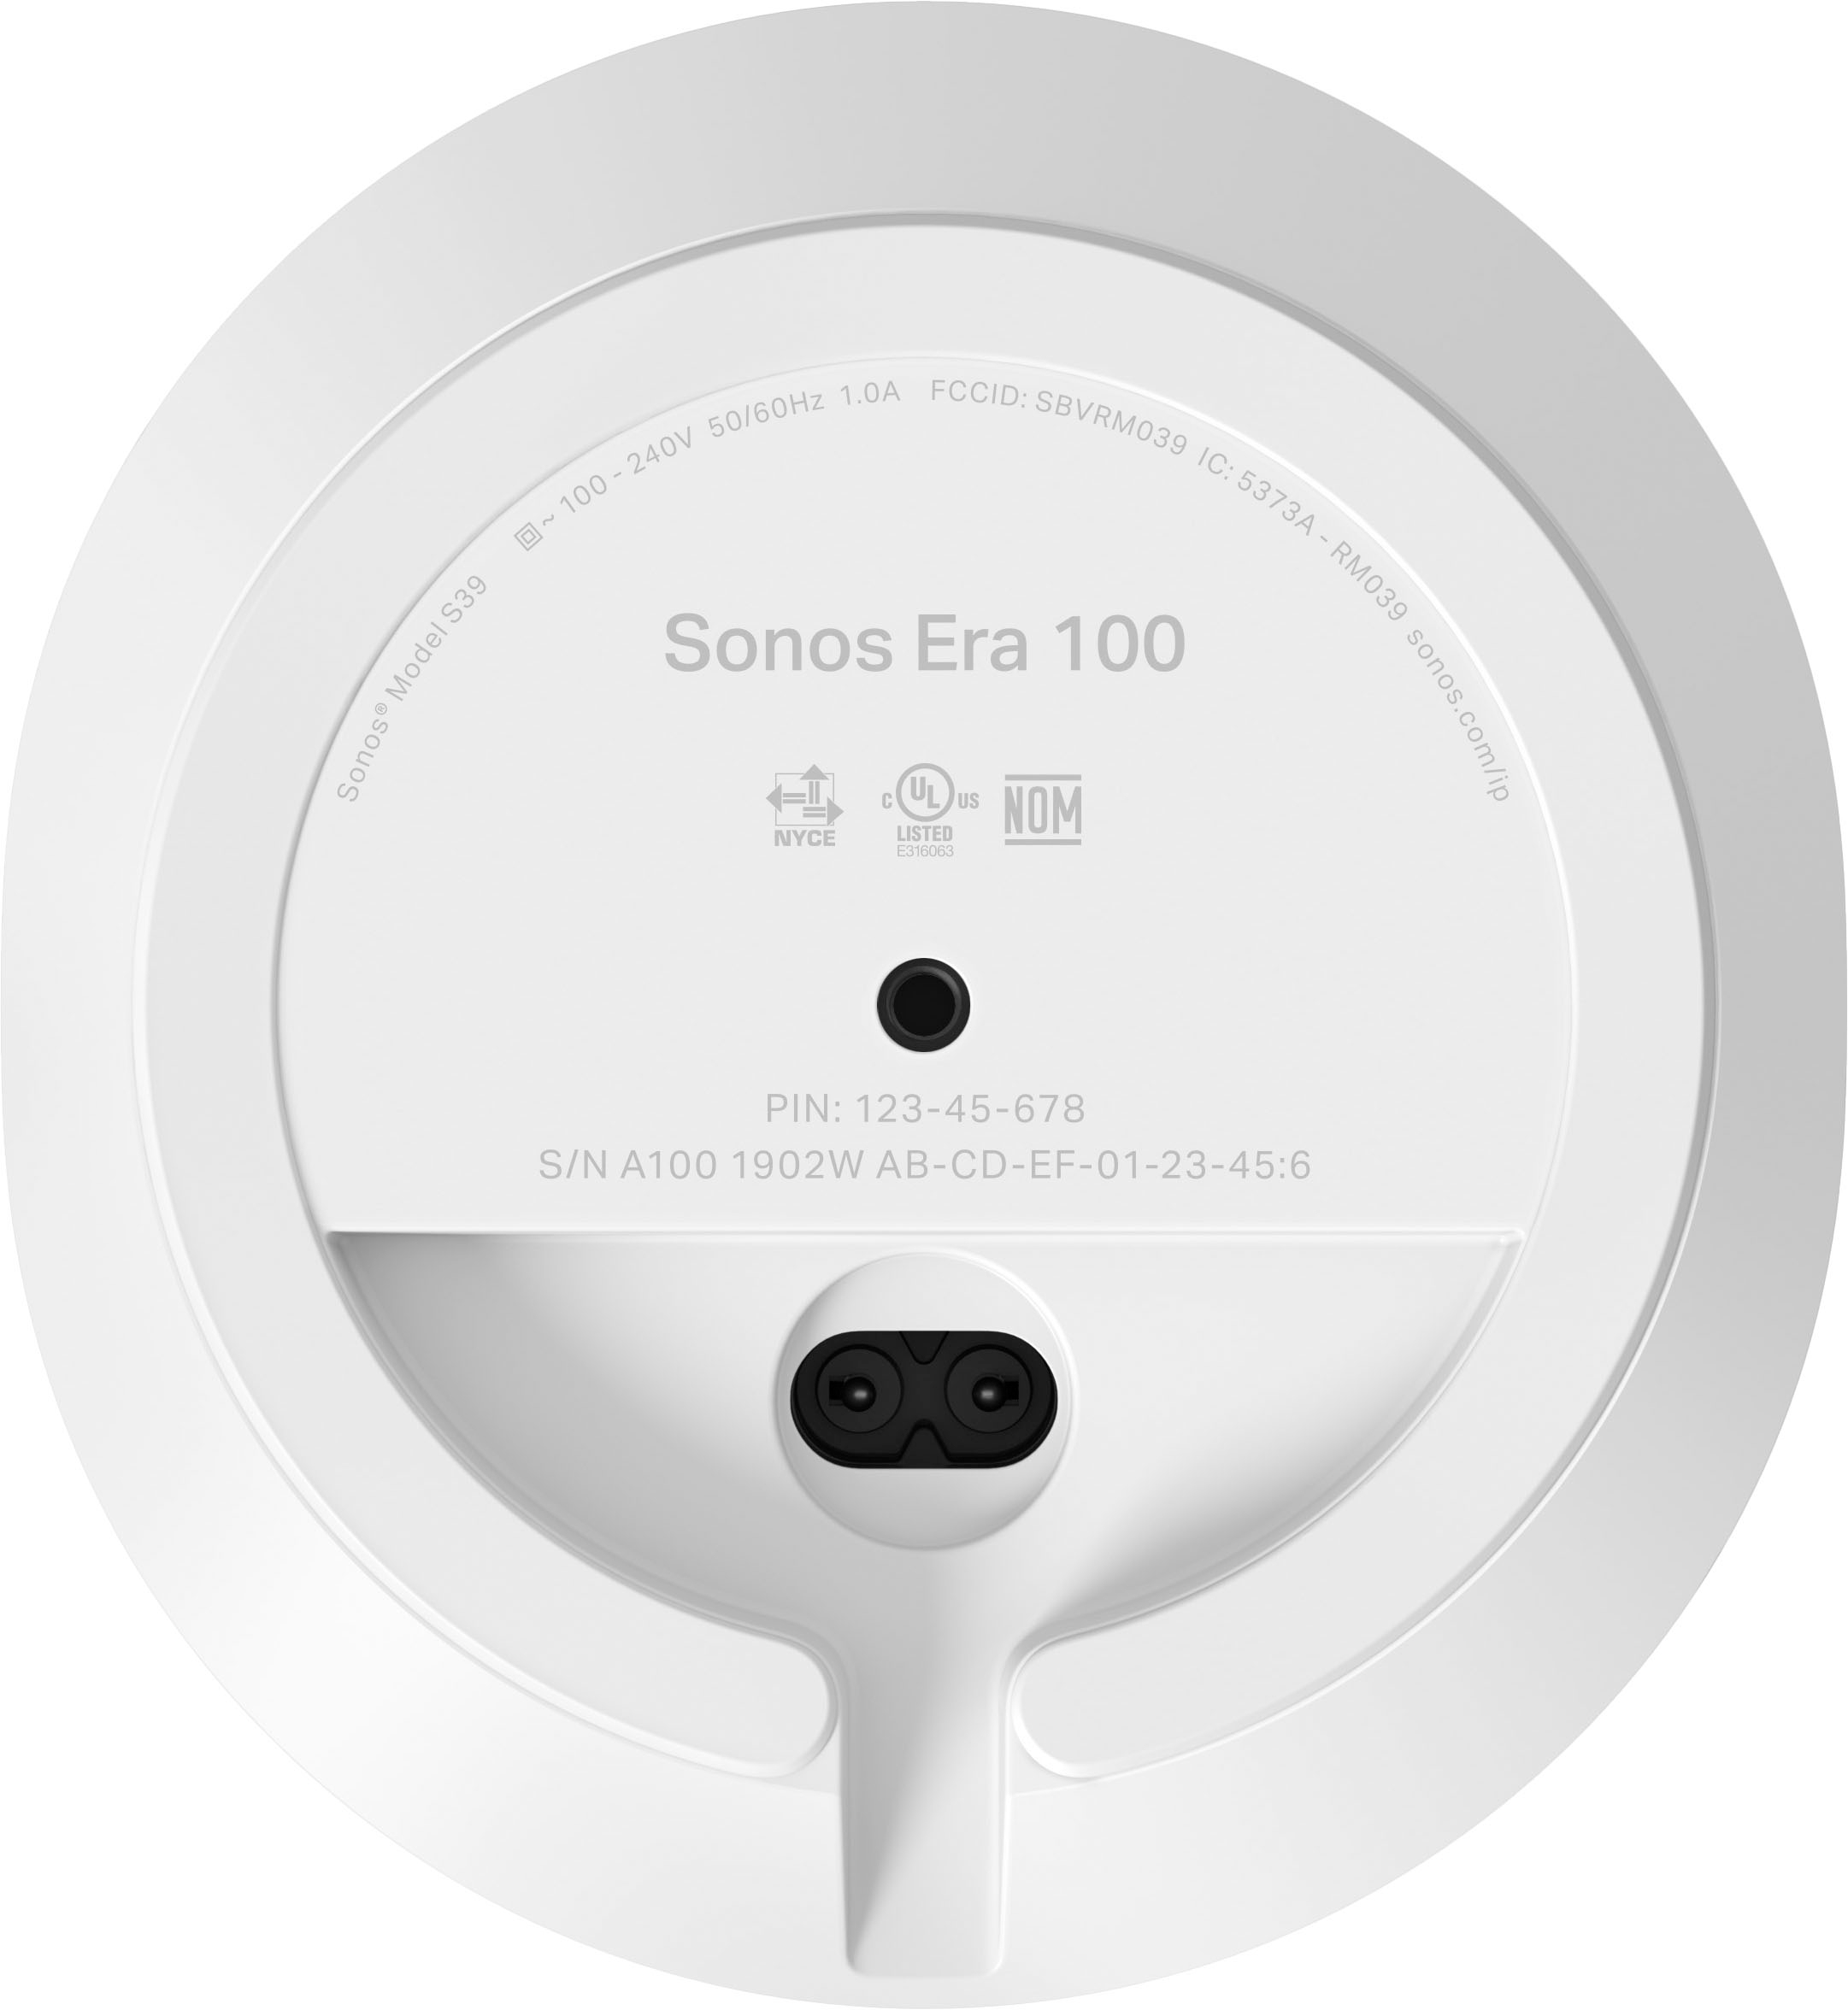 E10G1US1 Best (Each) Era 100 Buy Sonos Speaker White -